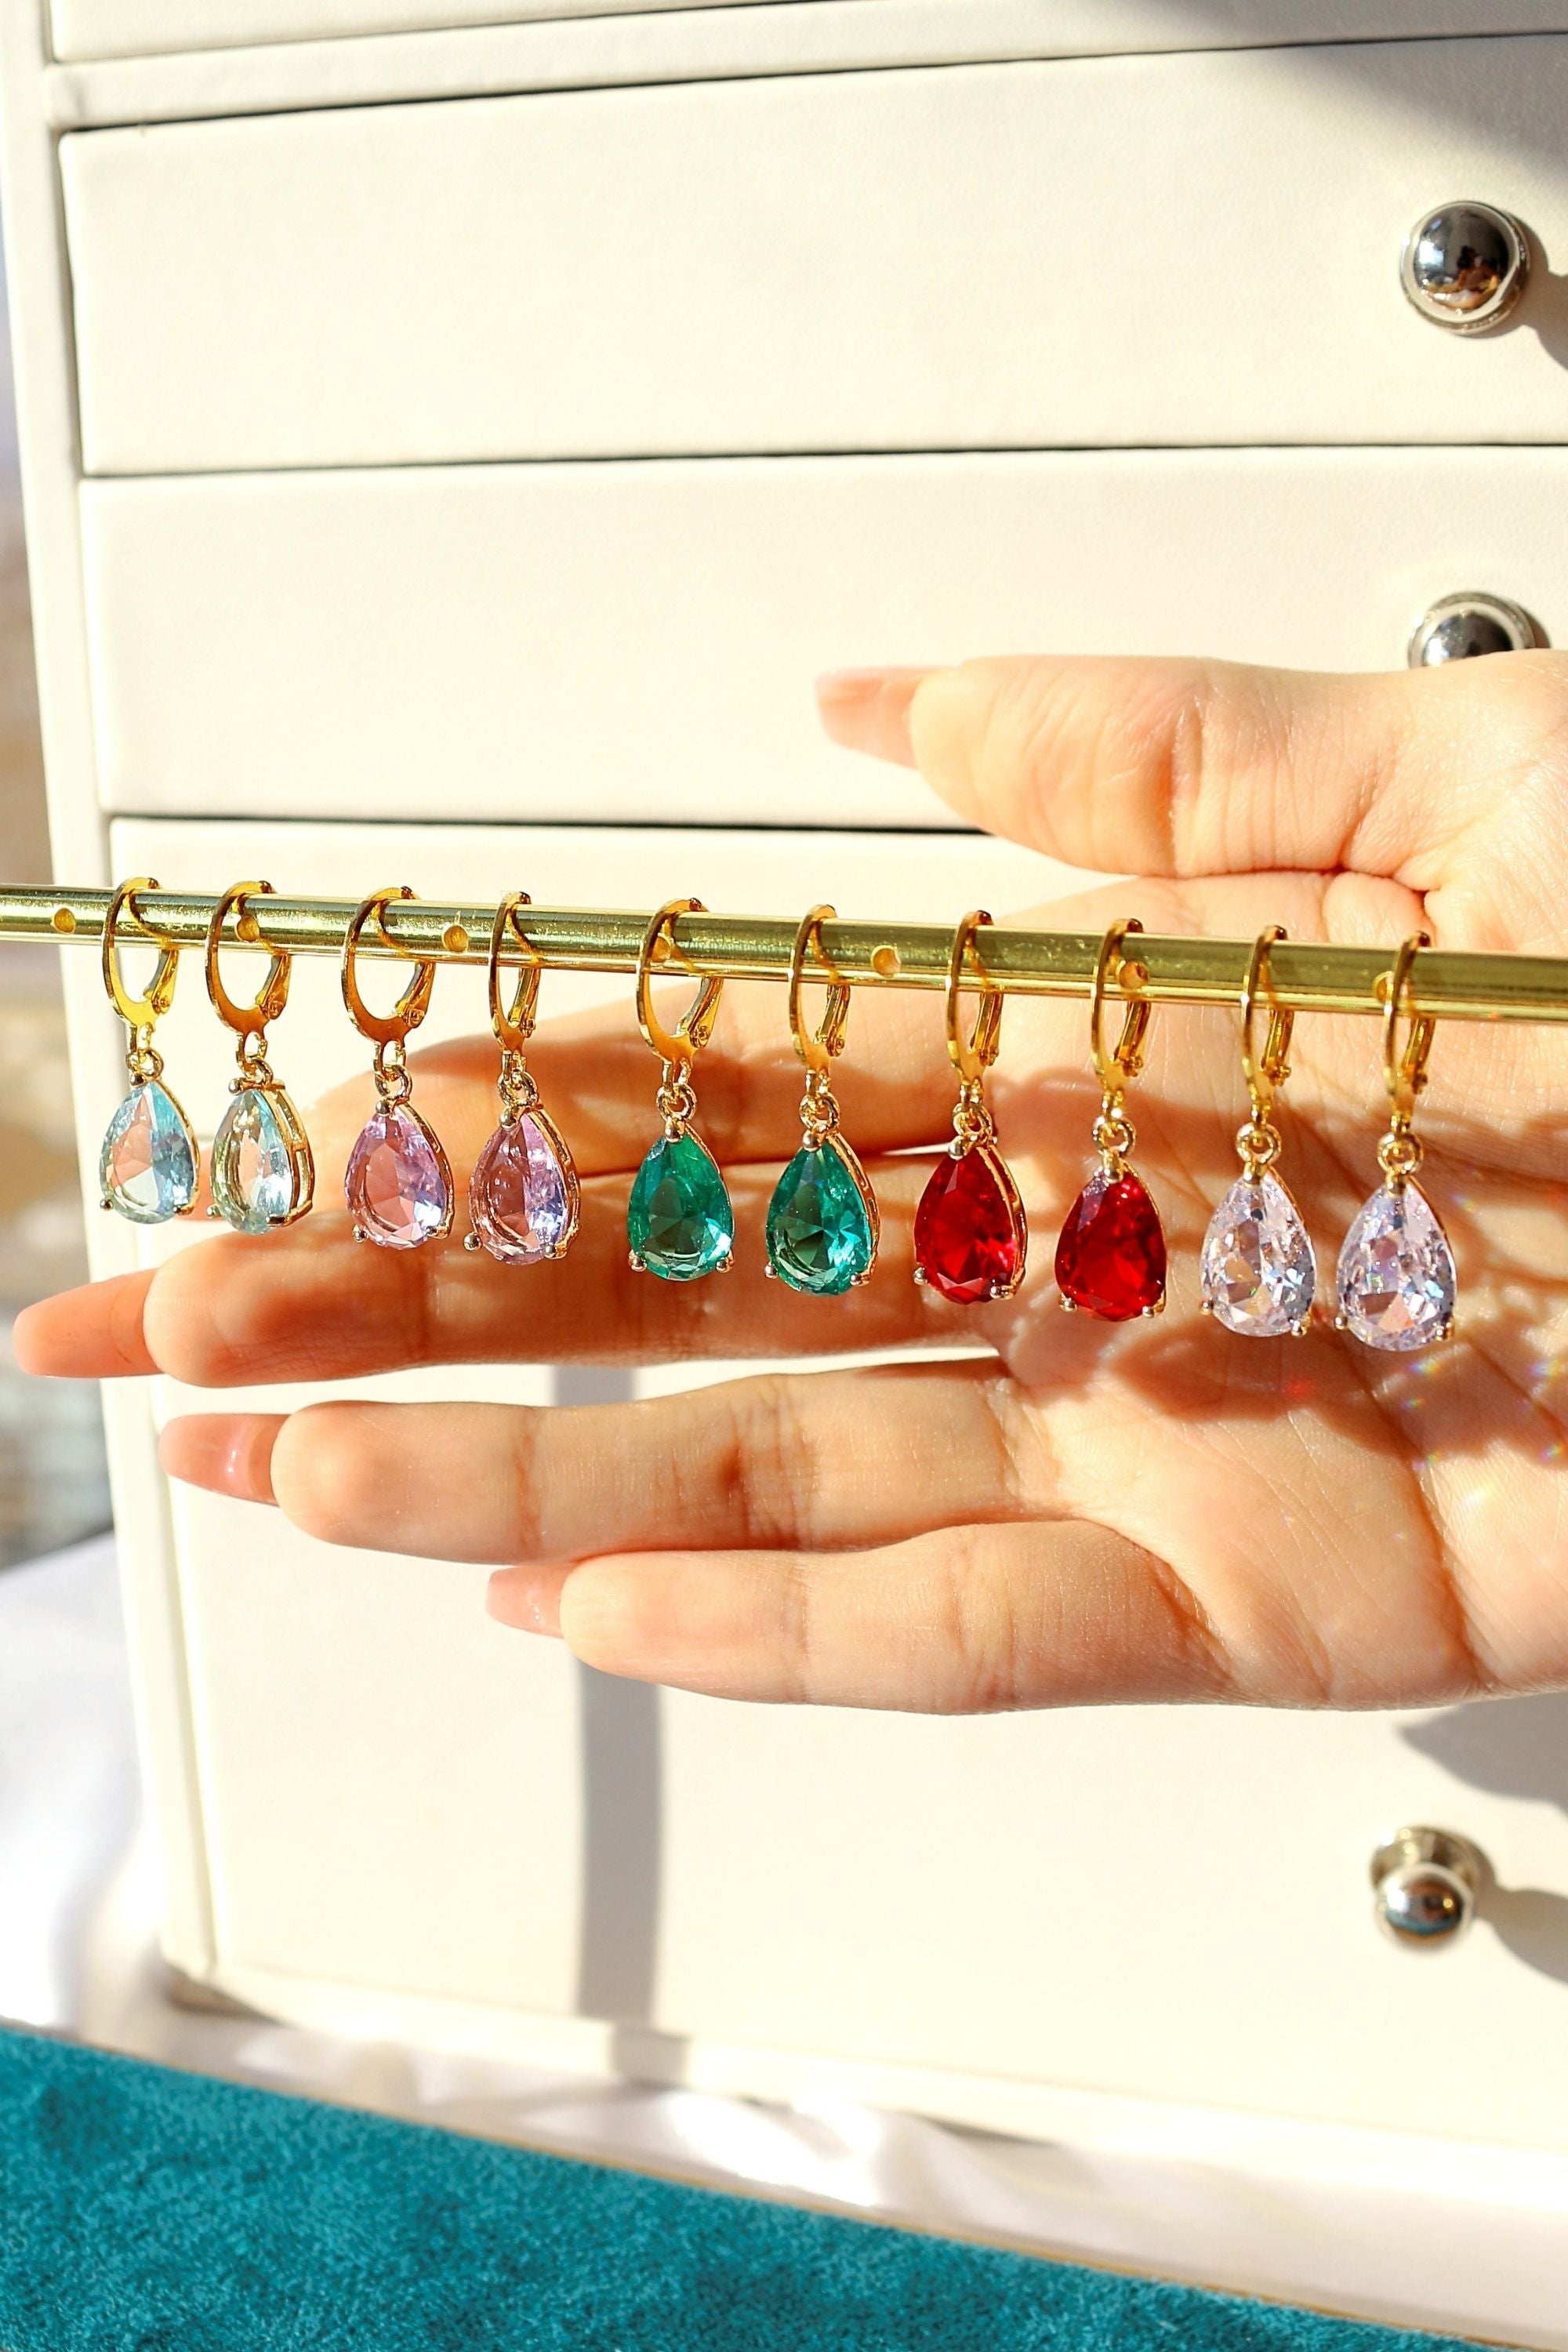 18K Rainbow Teardrop Hoop Earrings - Handmade in Europe with CZ Charms in 5 Colors Bijou Her